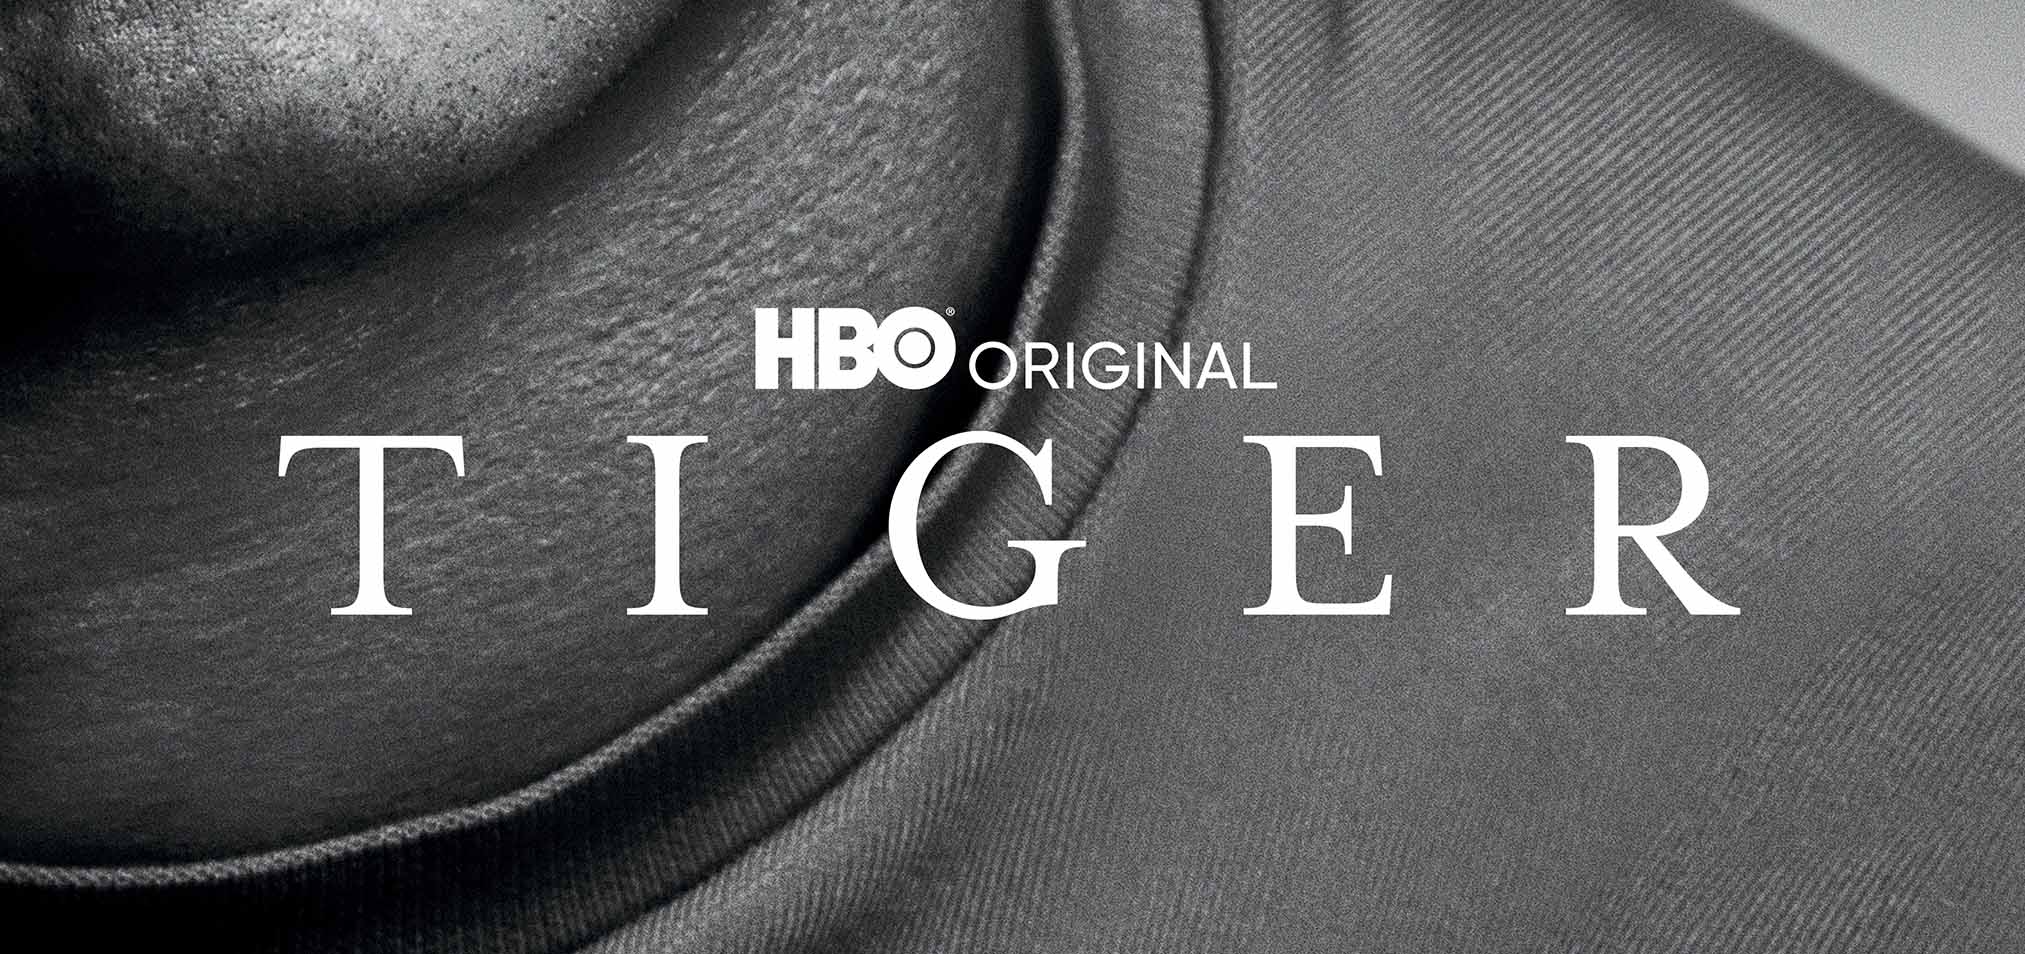 HBO nos presenta ‘Tiger’